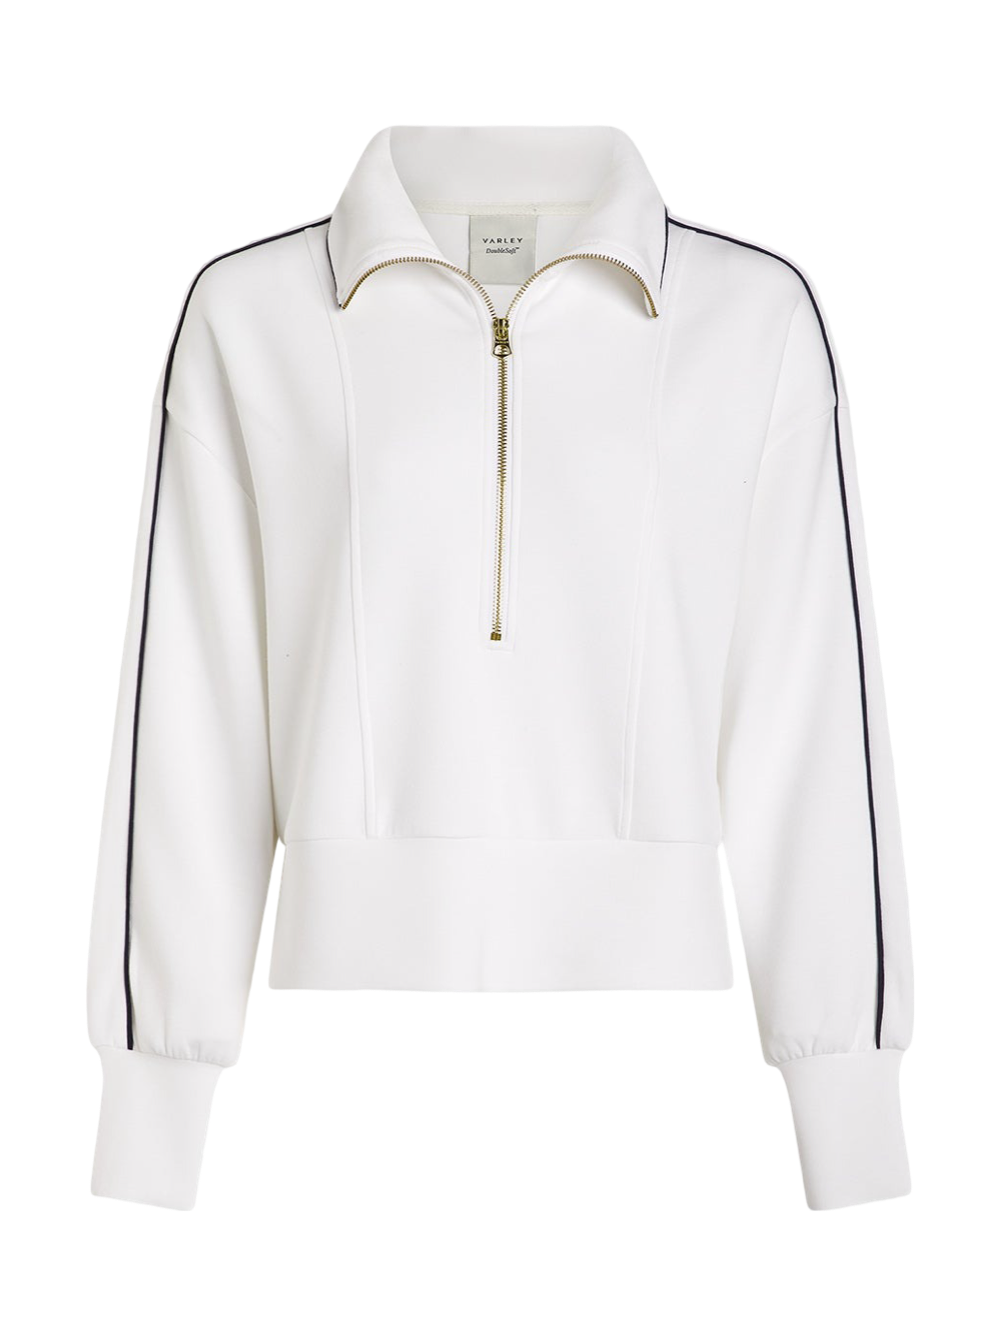 Varley Davenport Half-Zip Jacket in White